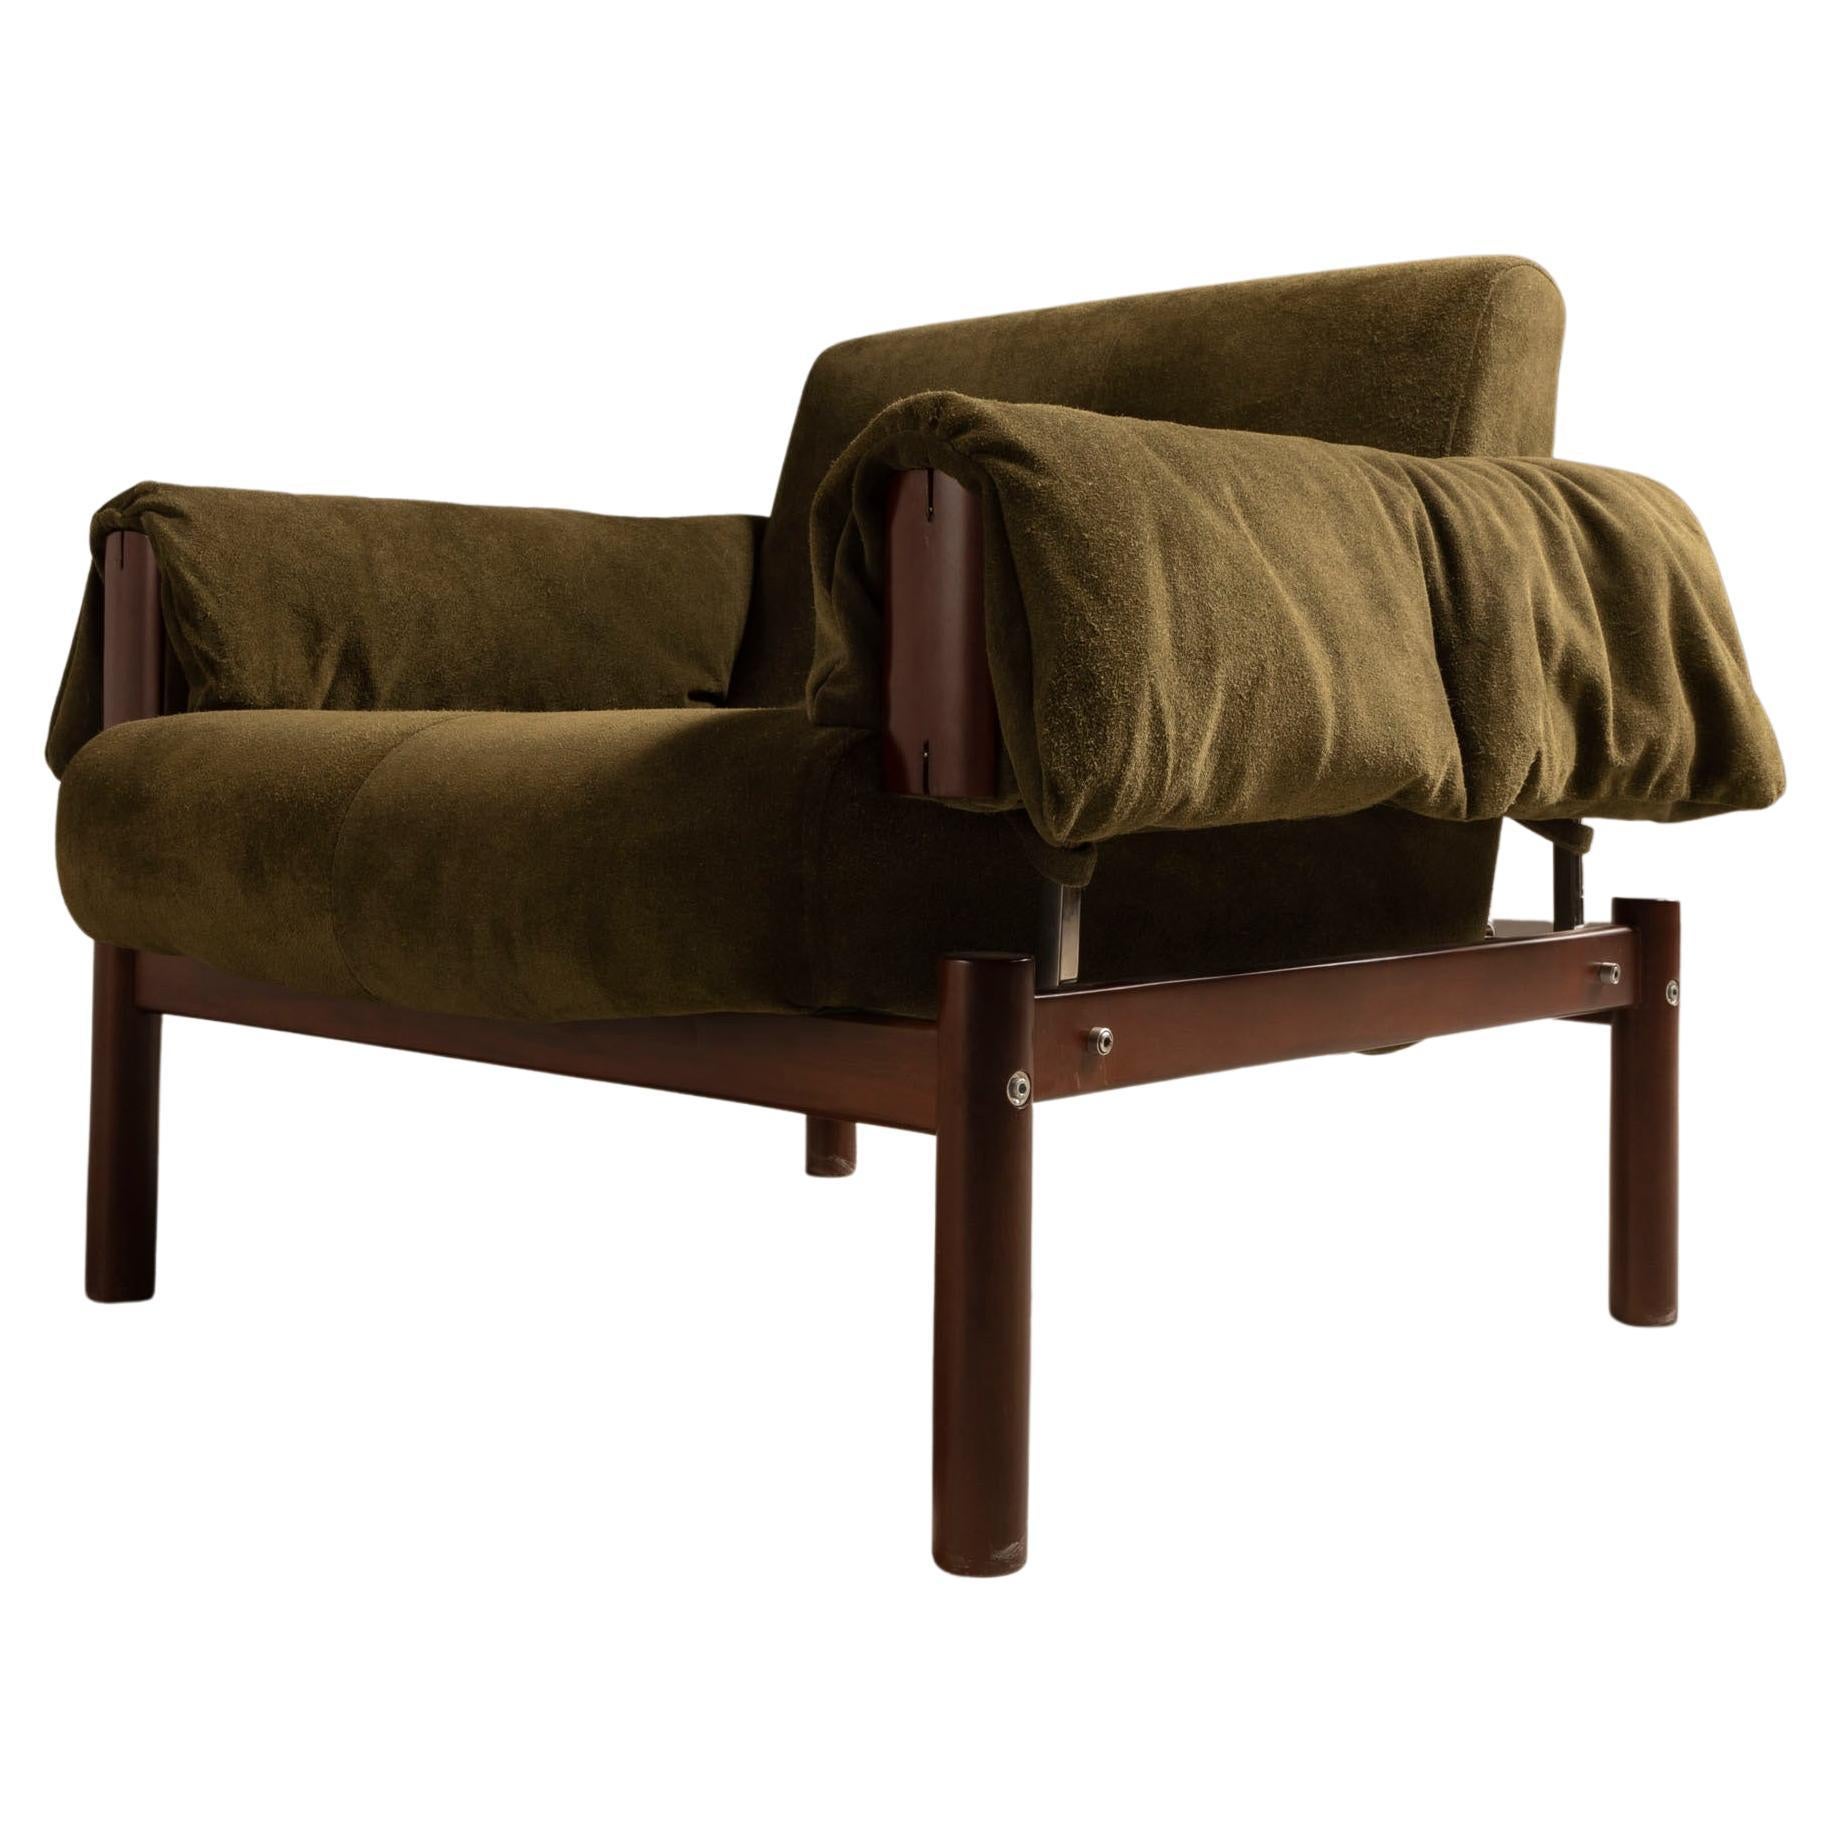 Paire de fauteuilsMP-13 de Percival Lafer, design brésilien moderne du milieu du siècle dernier